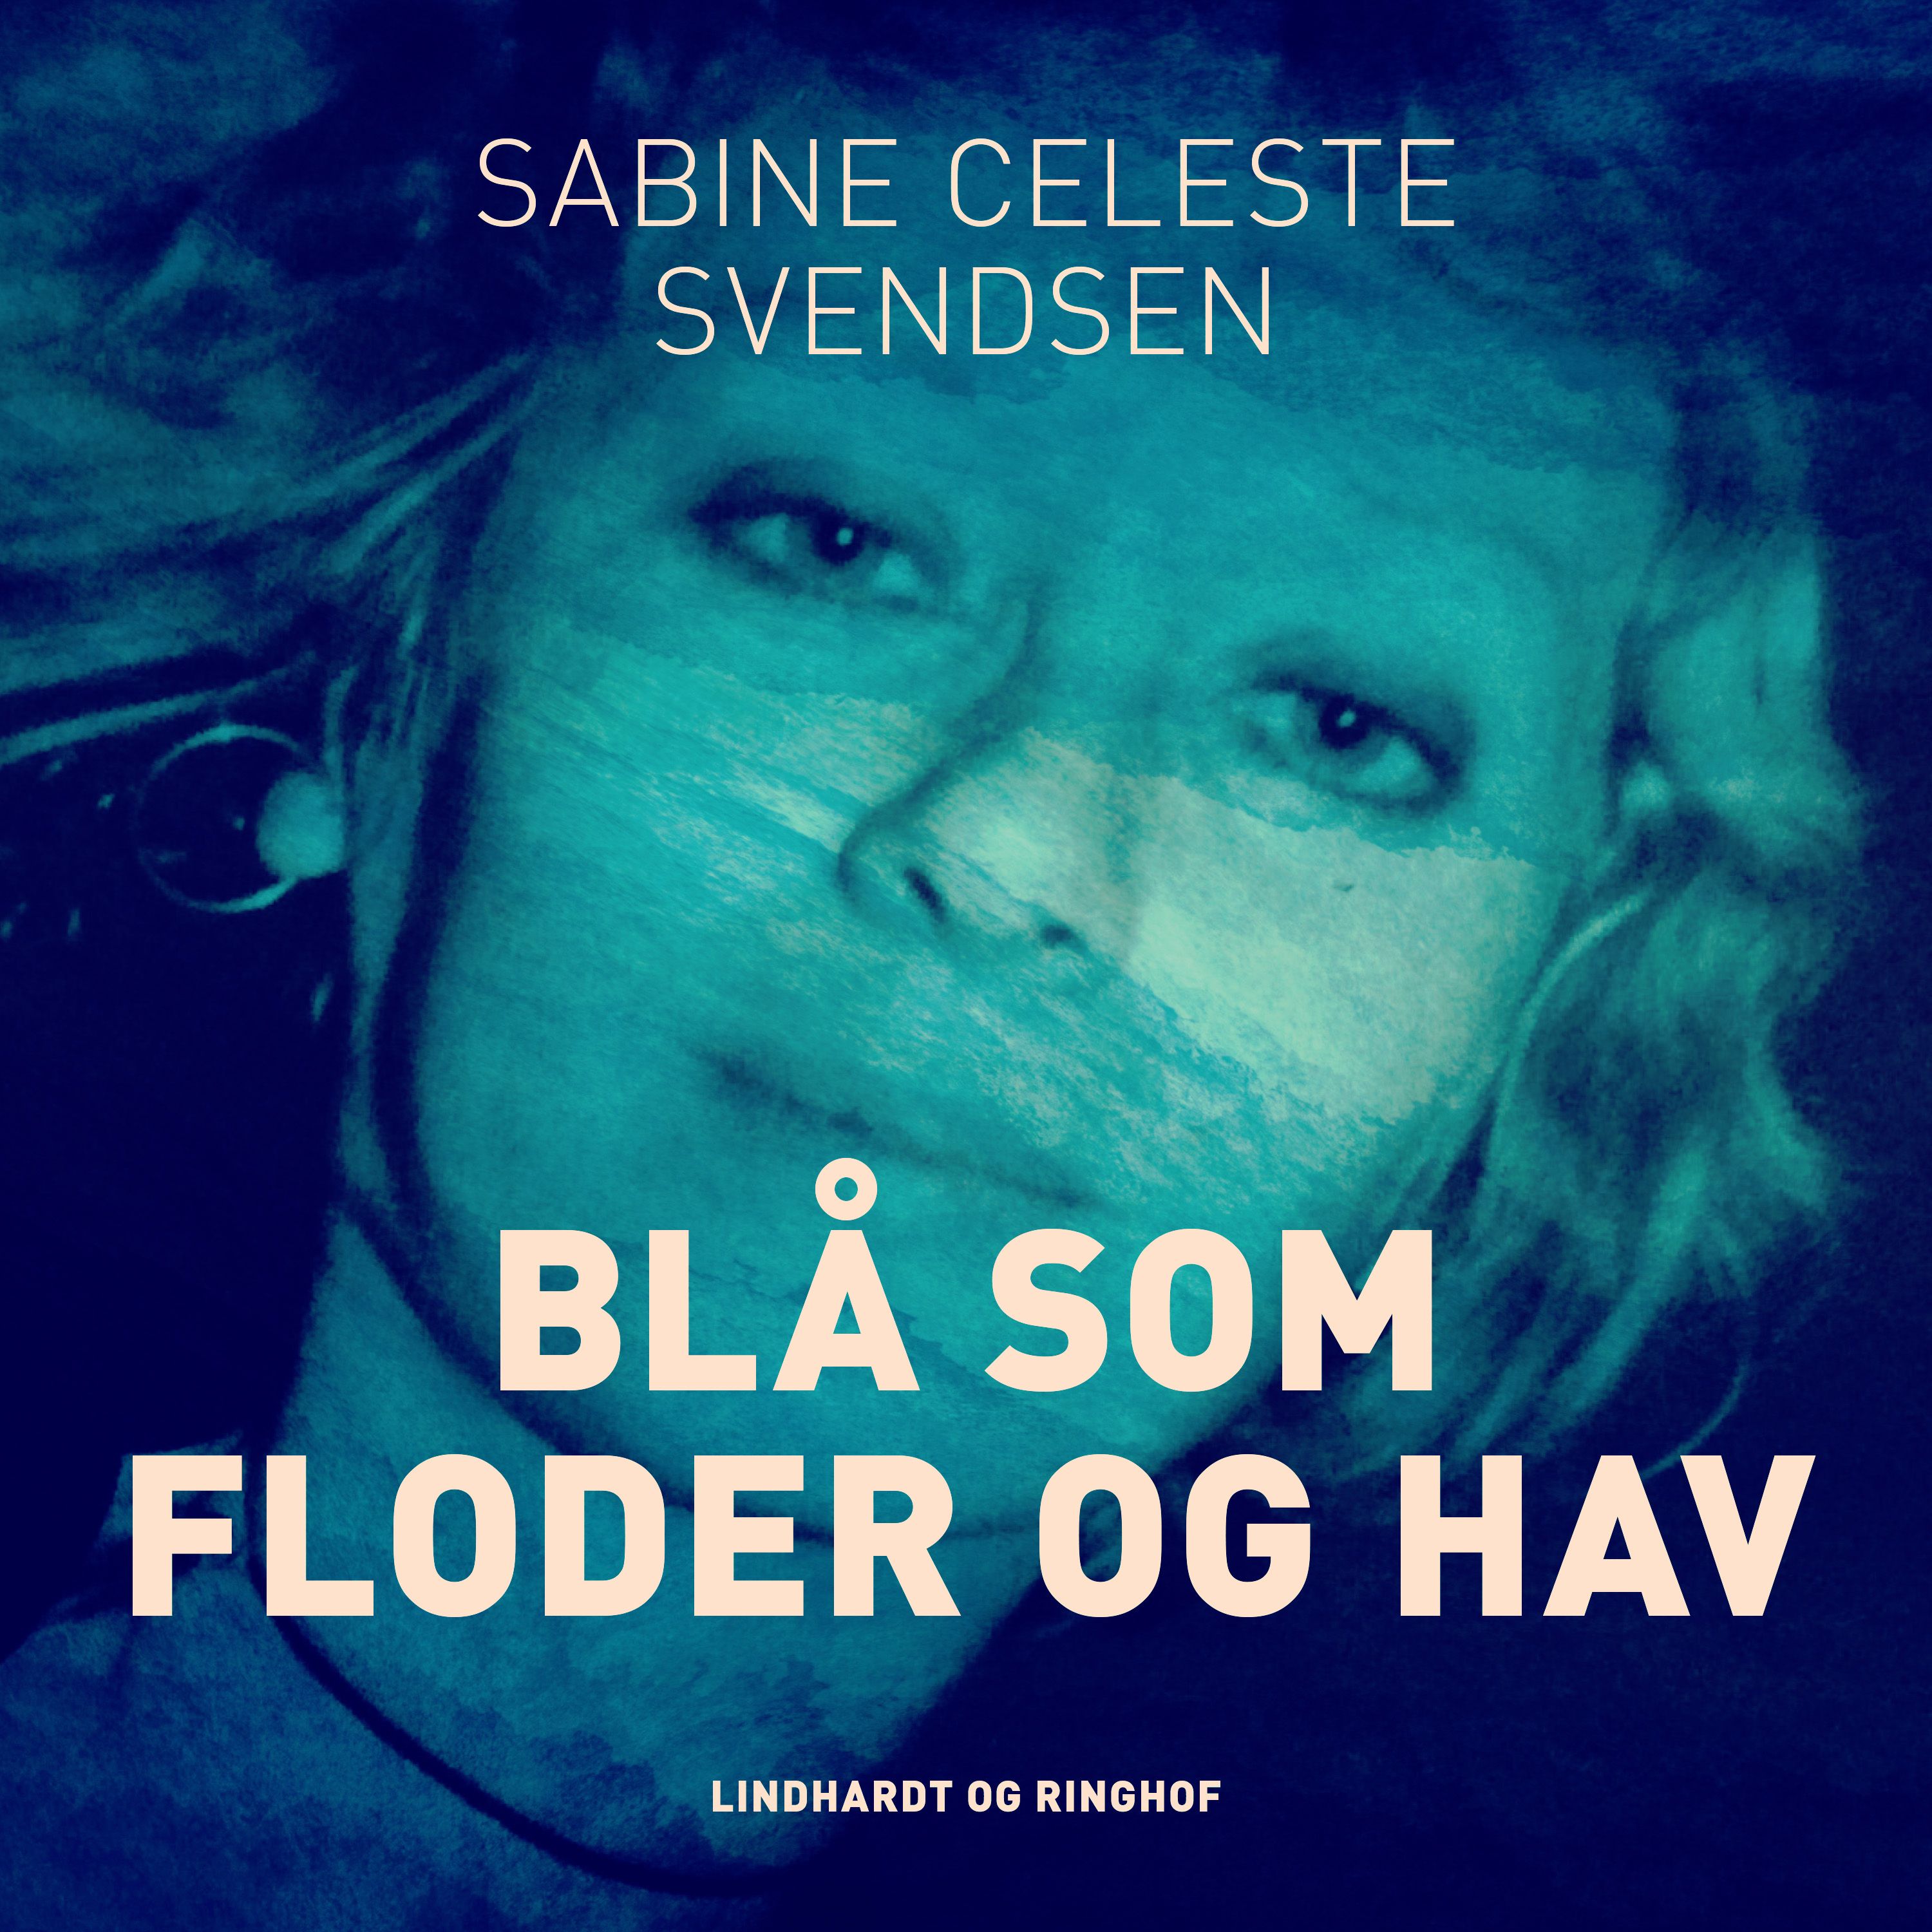 Blå som floder og hav, lydbog af Sabine Celeste Svendsen